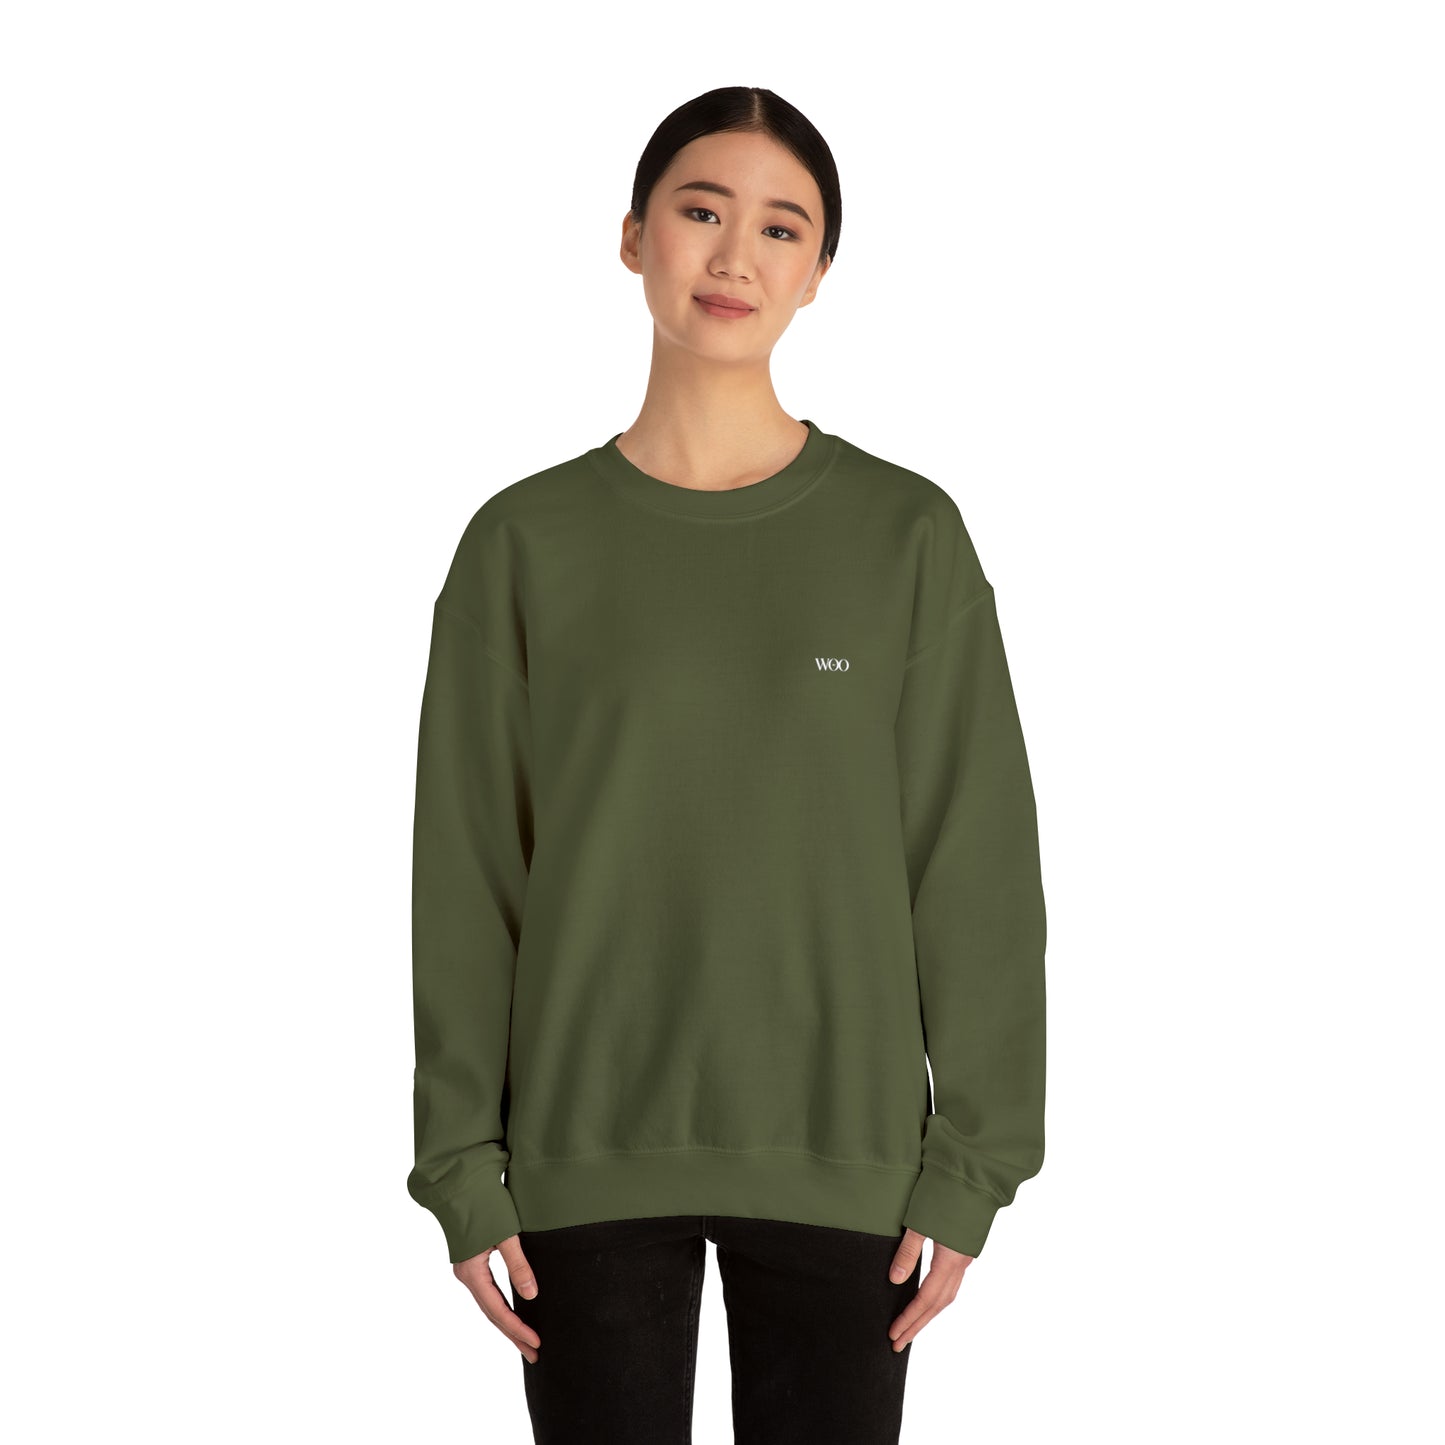 Cantalupo-in-Sabina - sweatshirt